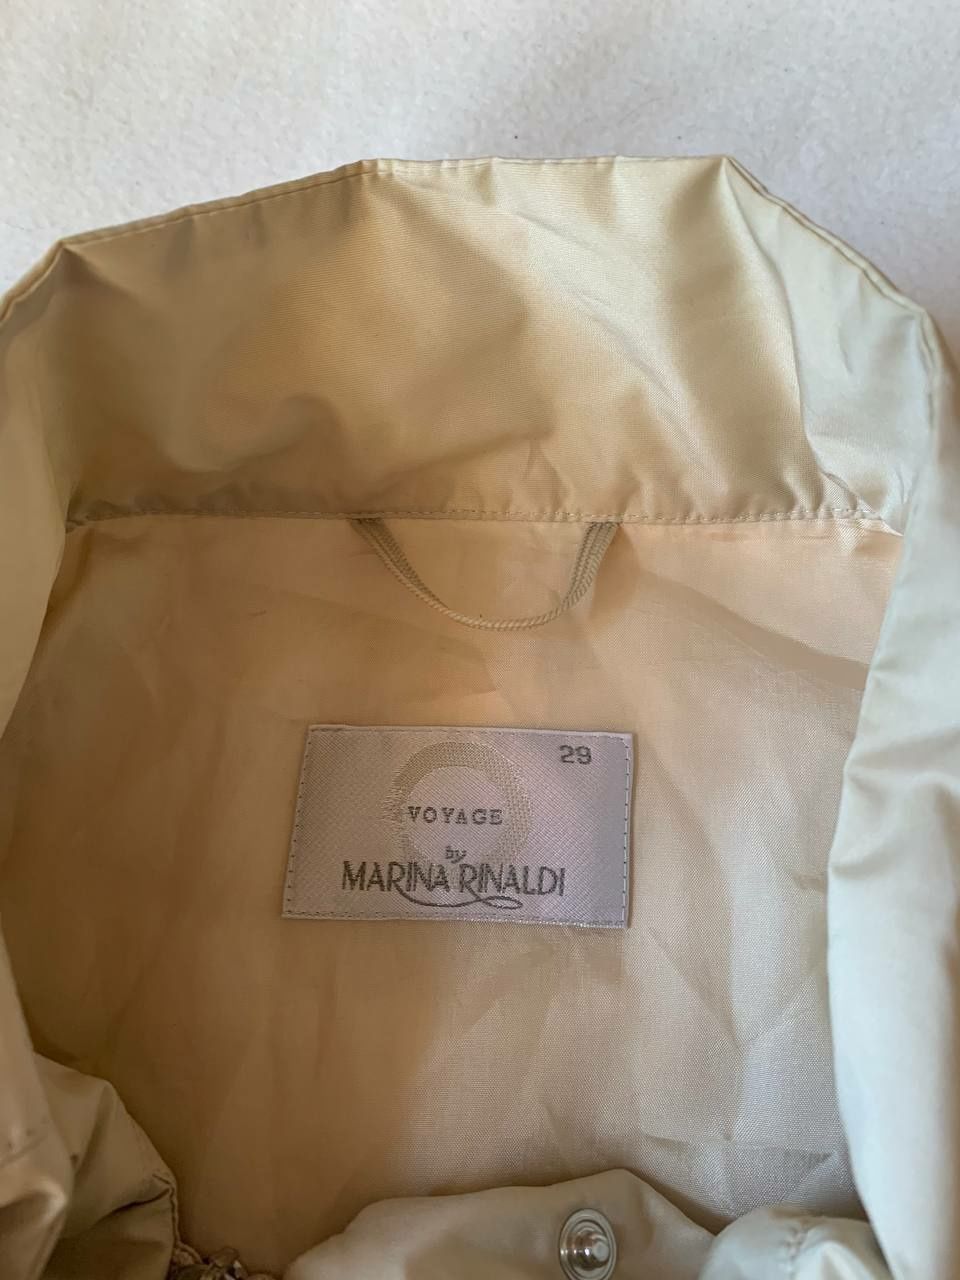 Женская куртка Marina Rinaldi Voyage р.XL жилетка 2 в 1